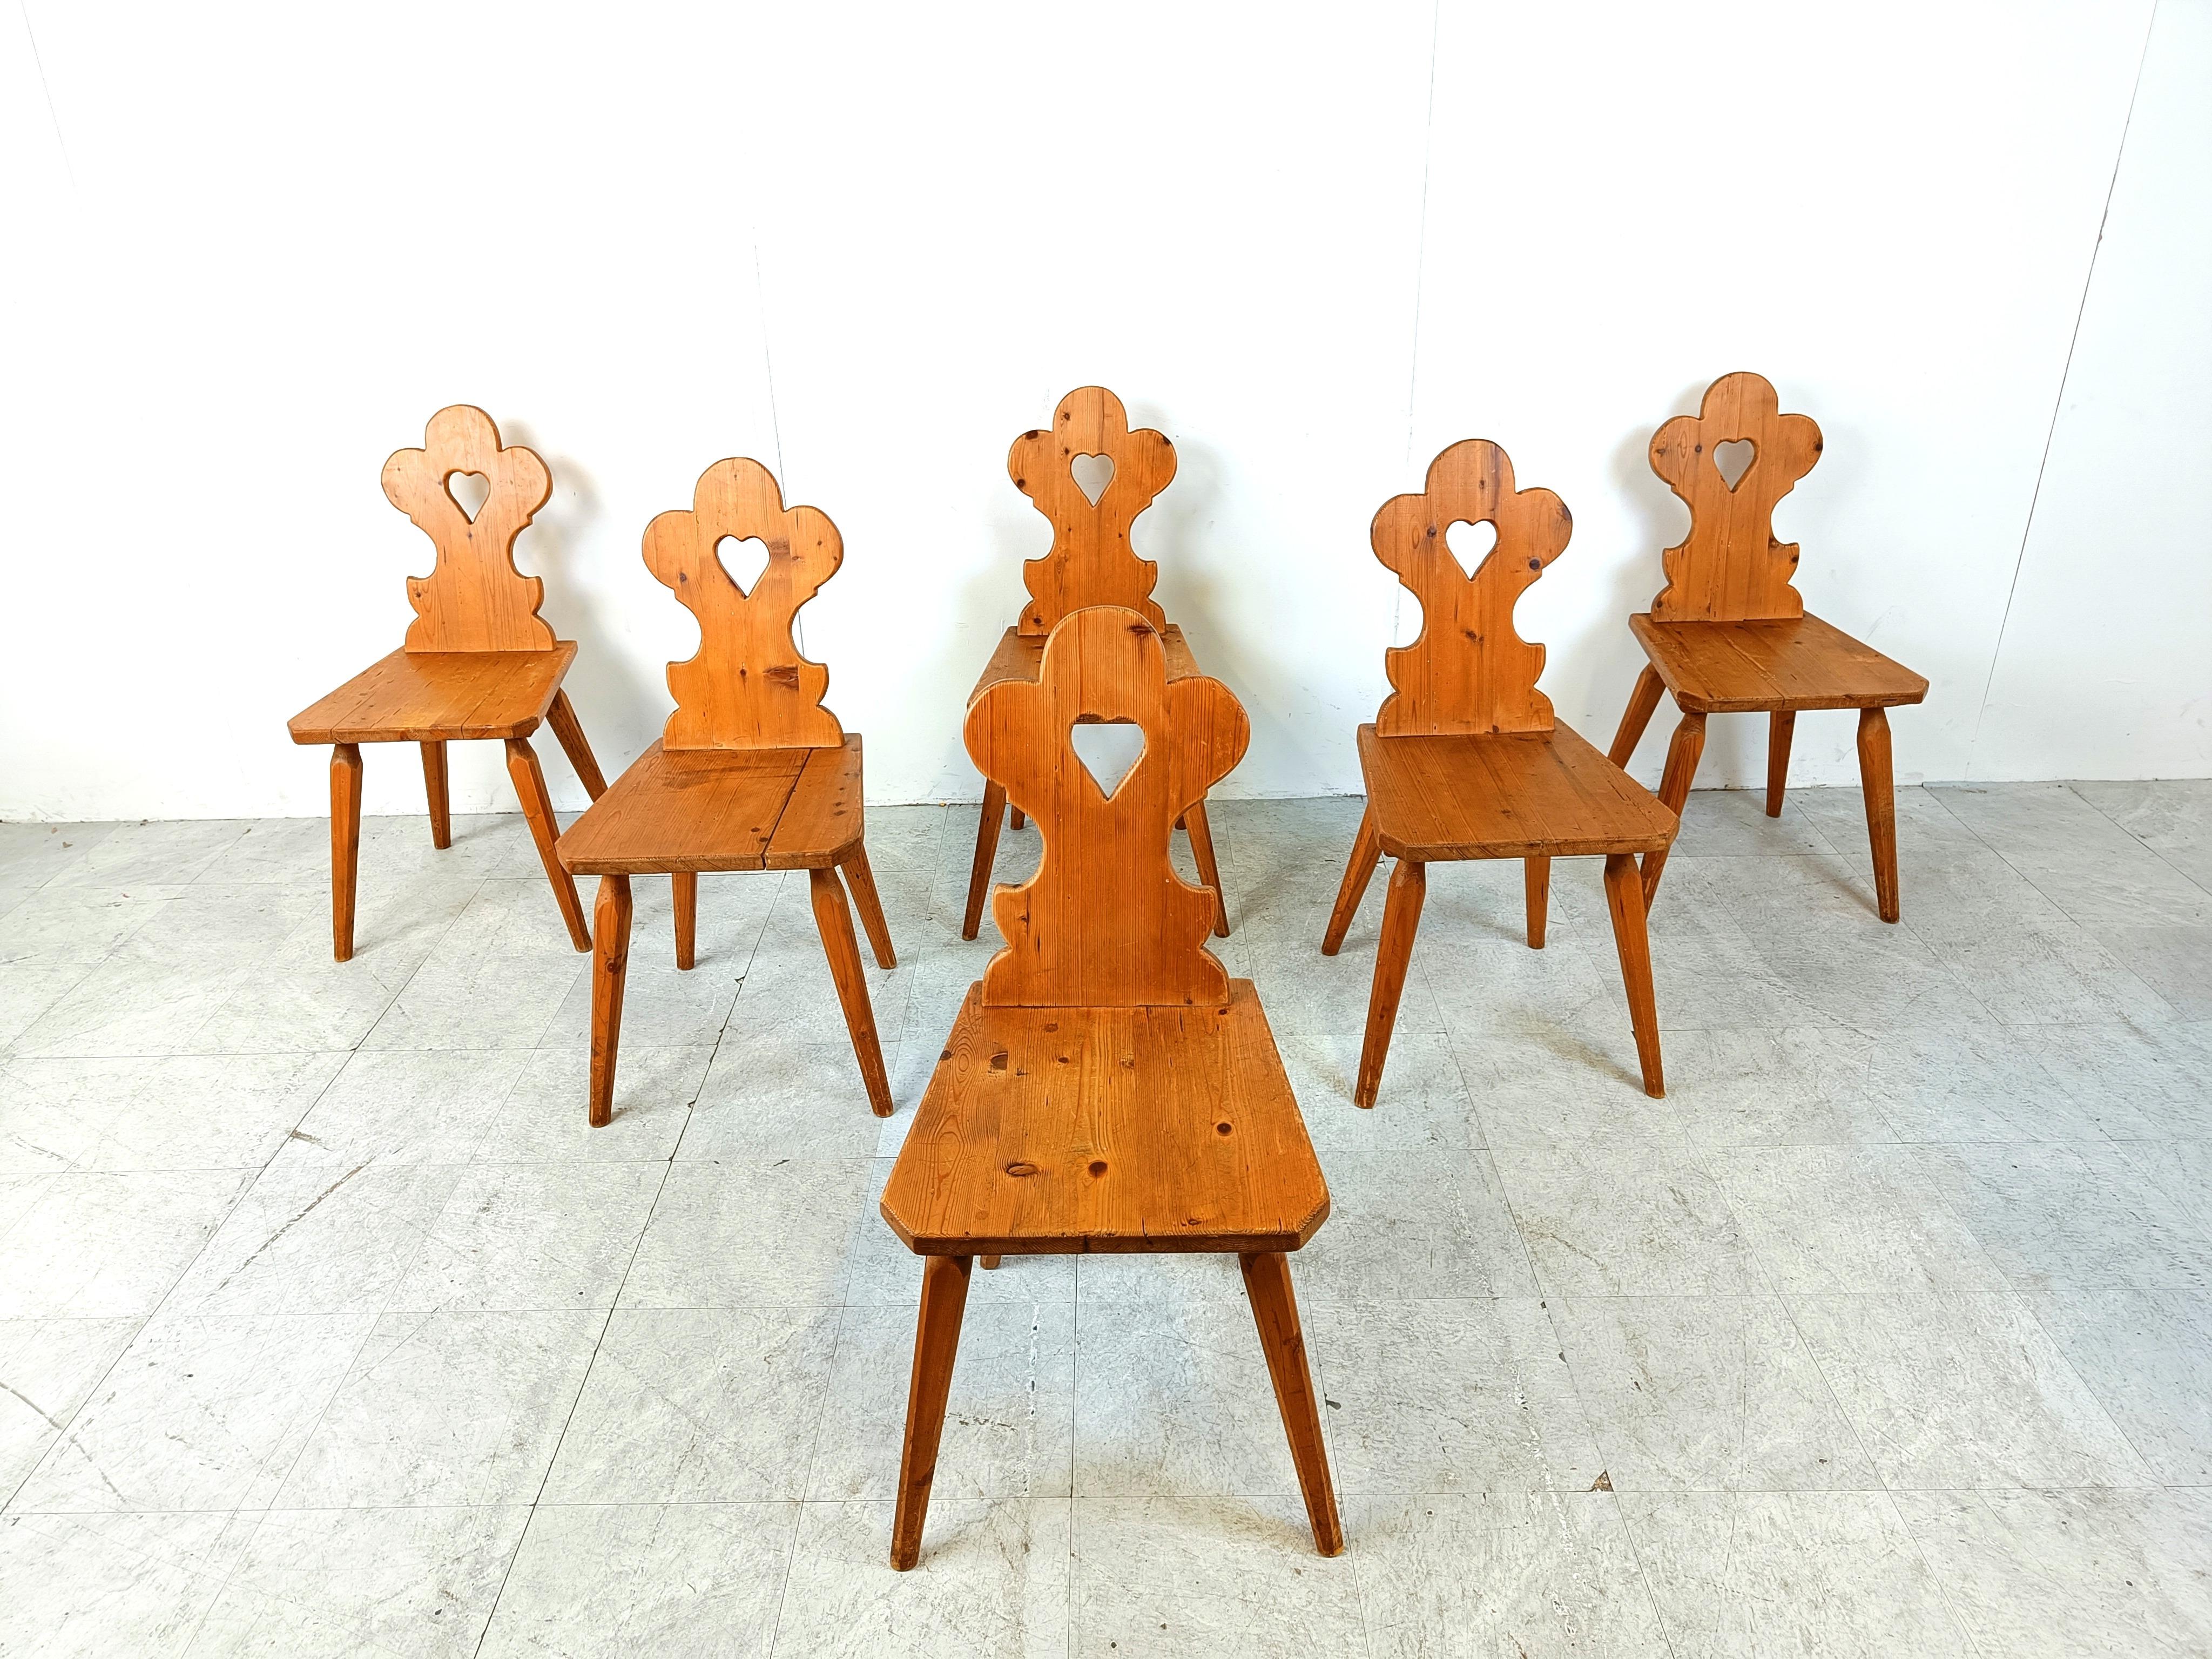 Vintage Eiche schwedische Volkskunst Esszimmerstühle

Diese rustikalen Bauernstühle wurden in Handarbeit hergestellt und zeugen von guter Handwerkskunst.

Guter Zustand mit normalen altersbedingten Gebrauchsspuren

1960er Jahre -